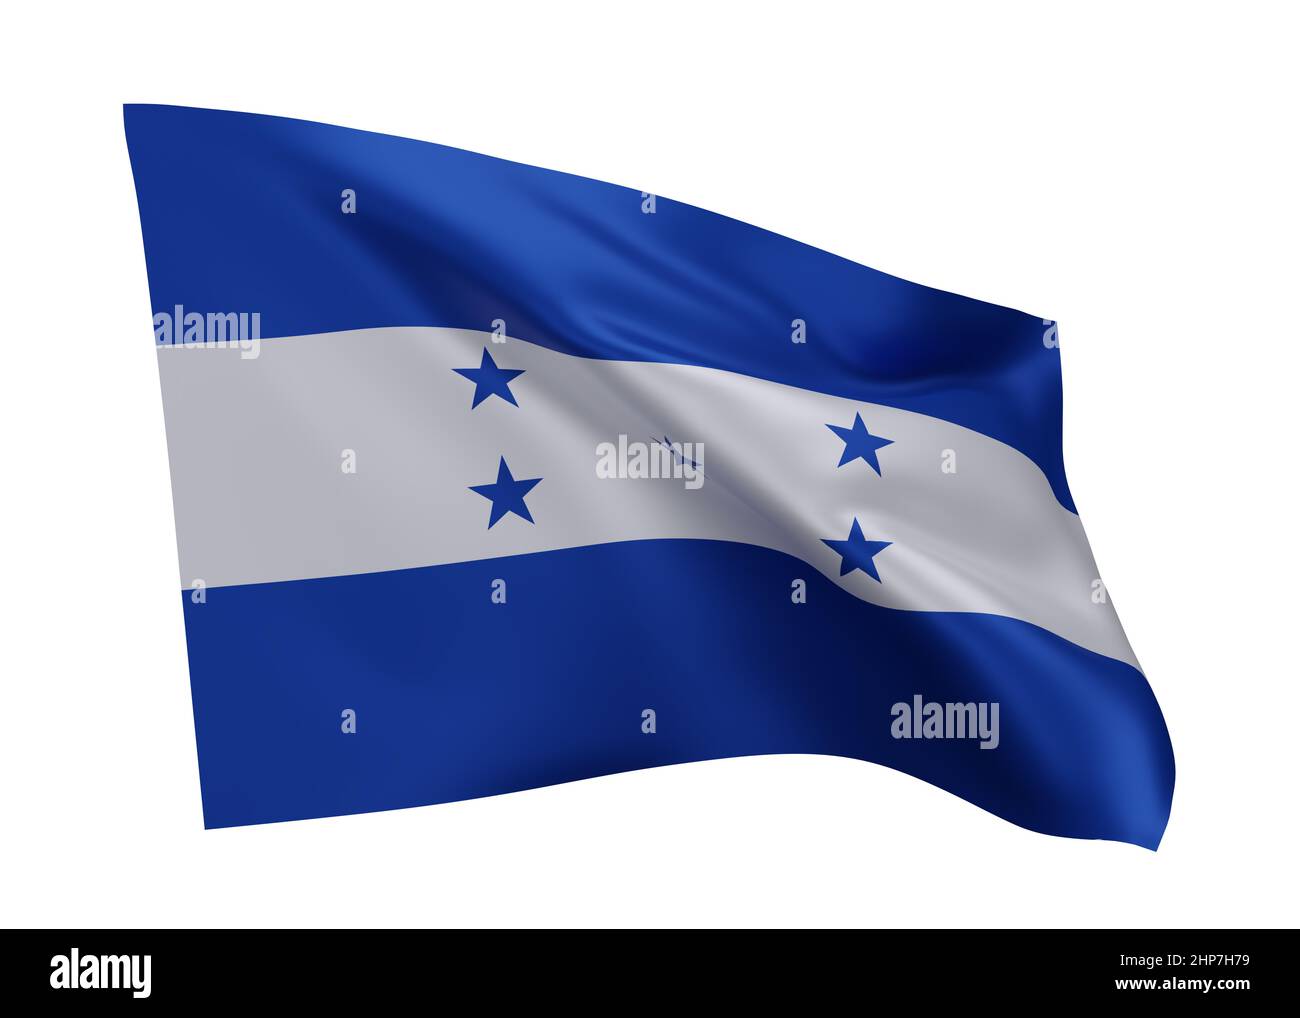 3d illustration flag of Honduras. Republic of Honduras high resolution flag isolated against white background. 3d rendering Stock Photo